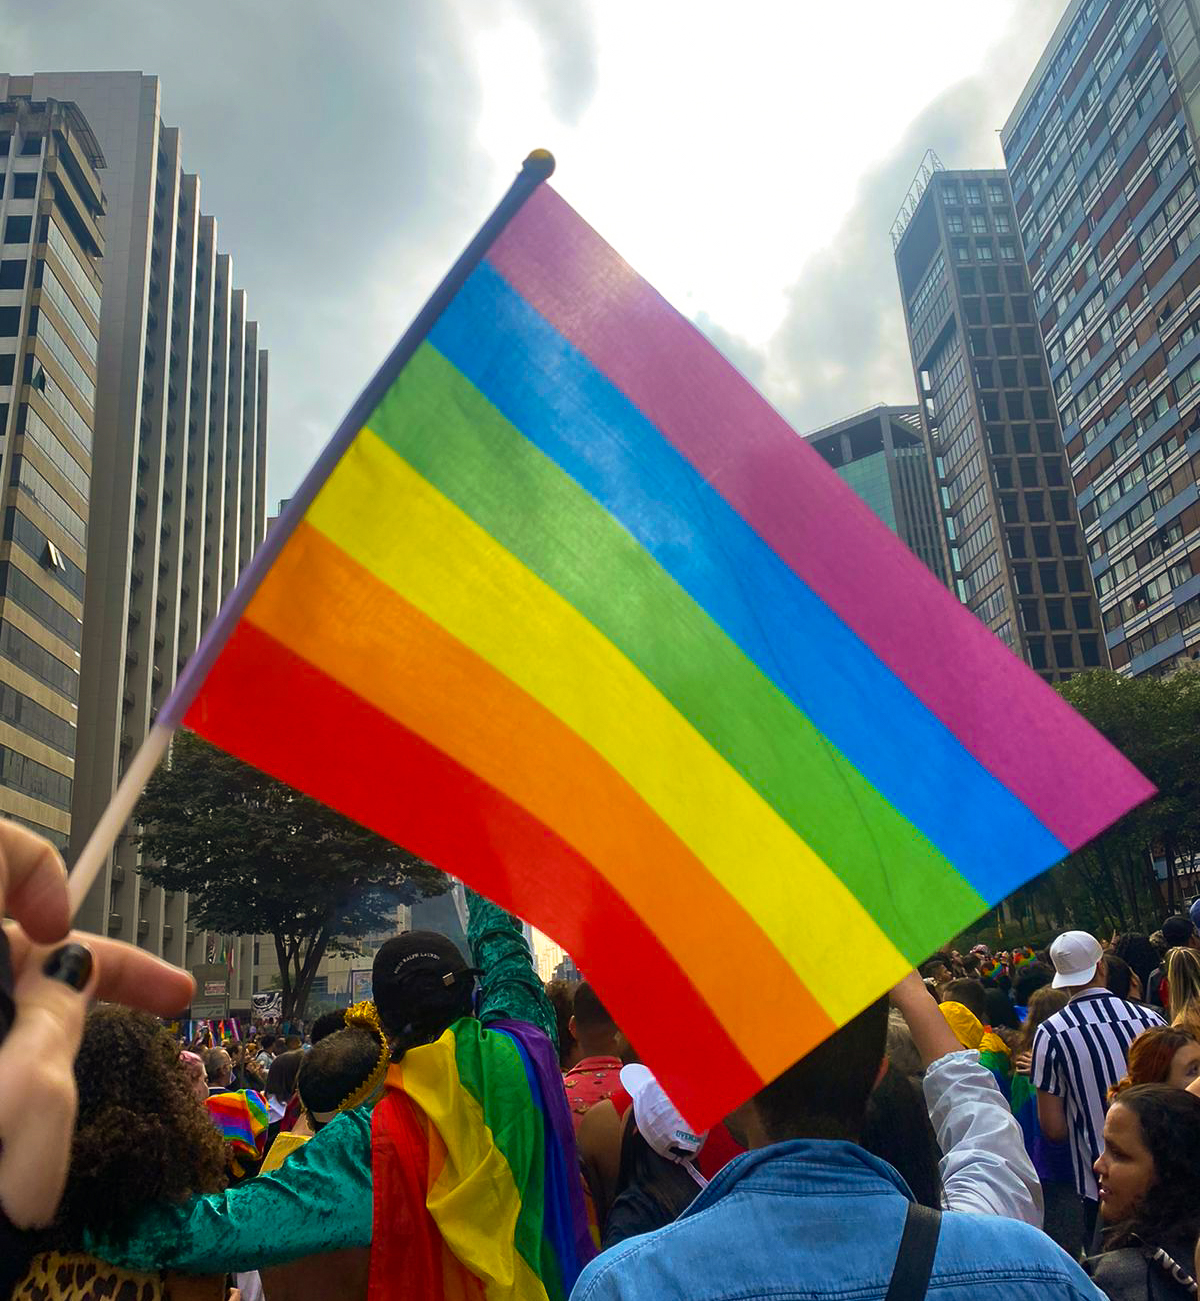 Bandeira LGBT+ levantada em meio à multidão da Parada do Orgulho.